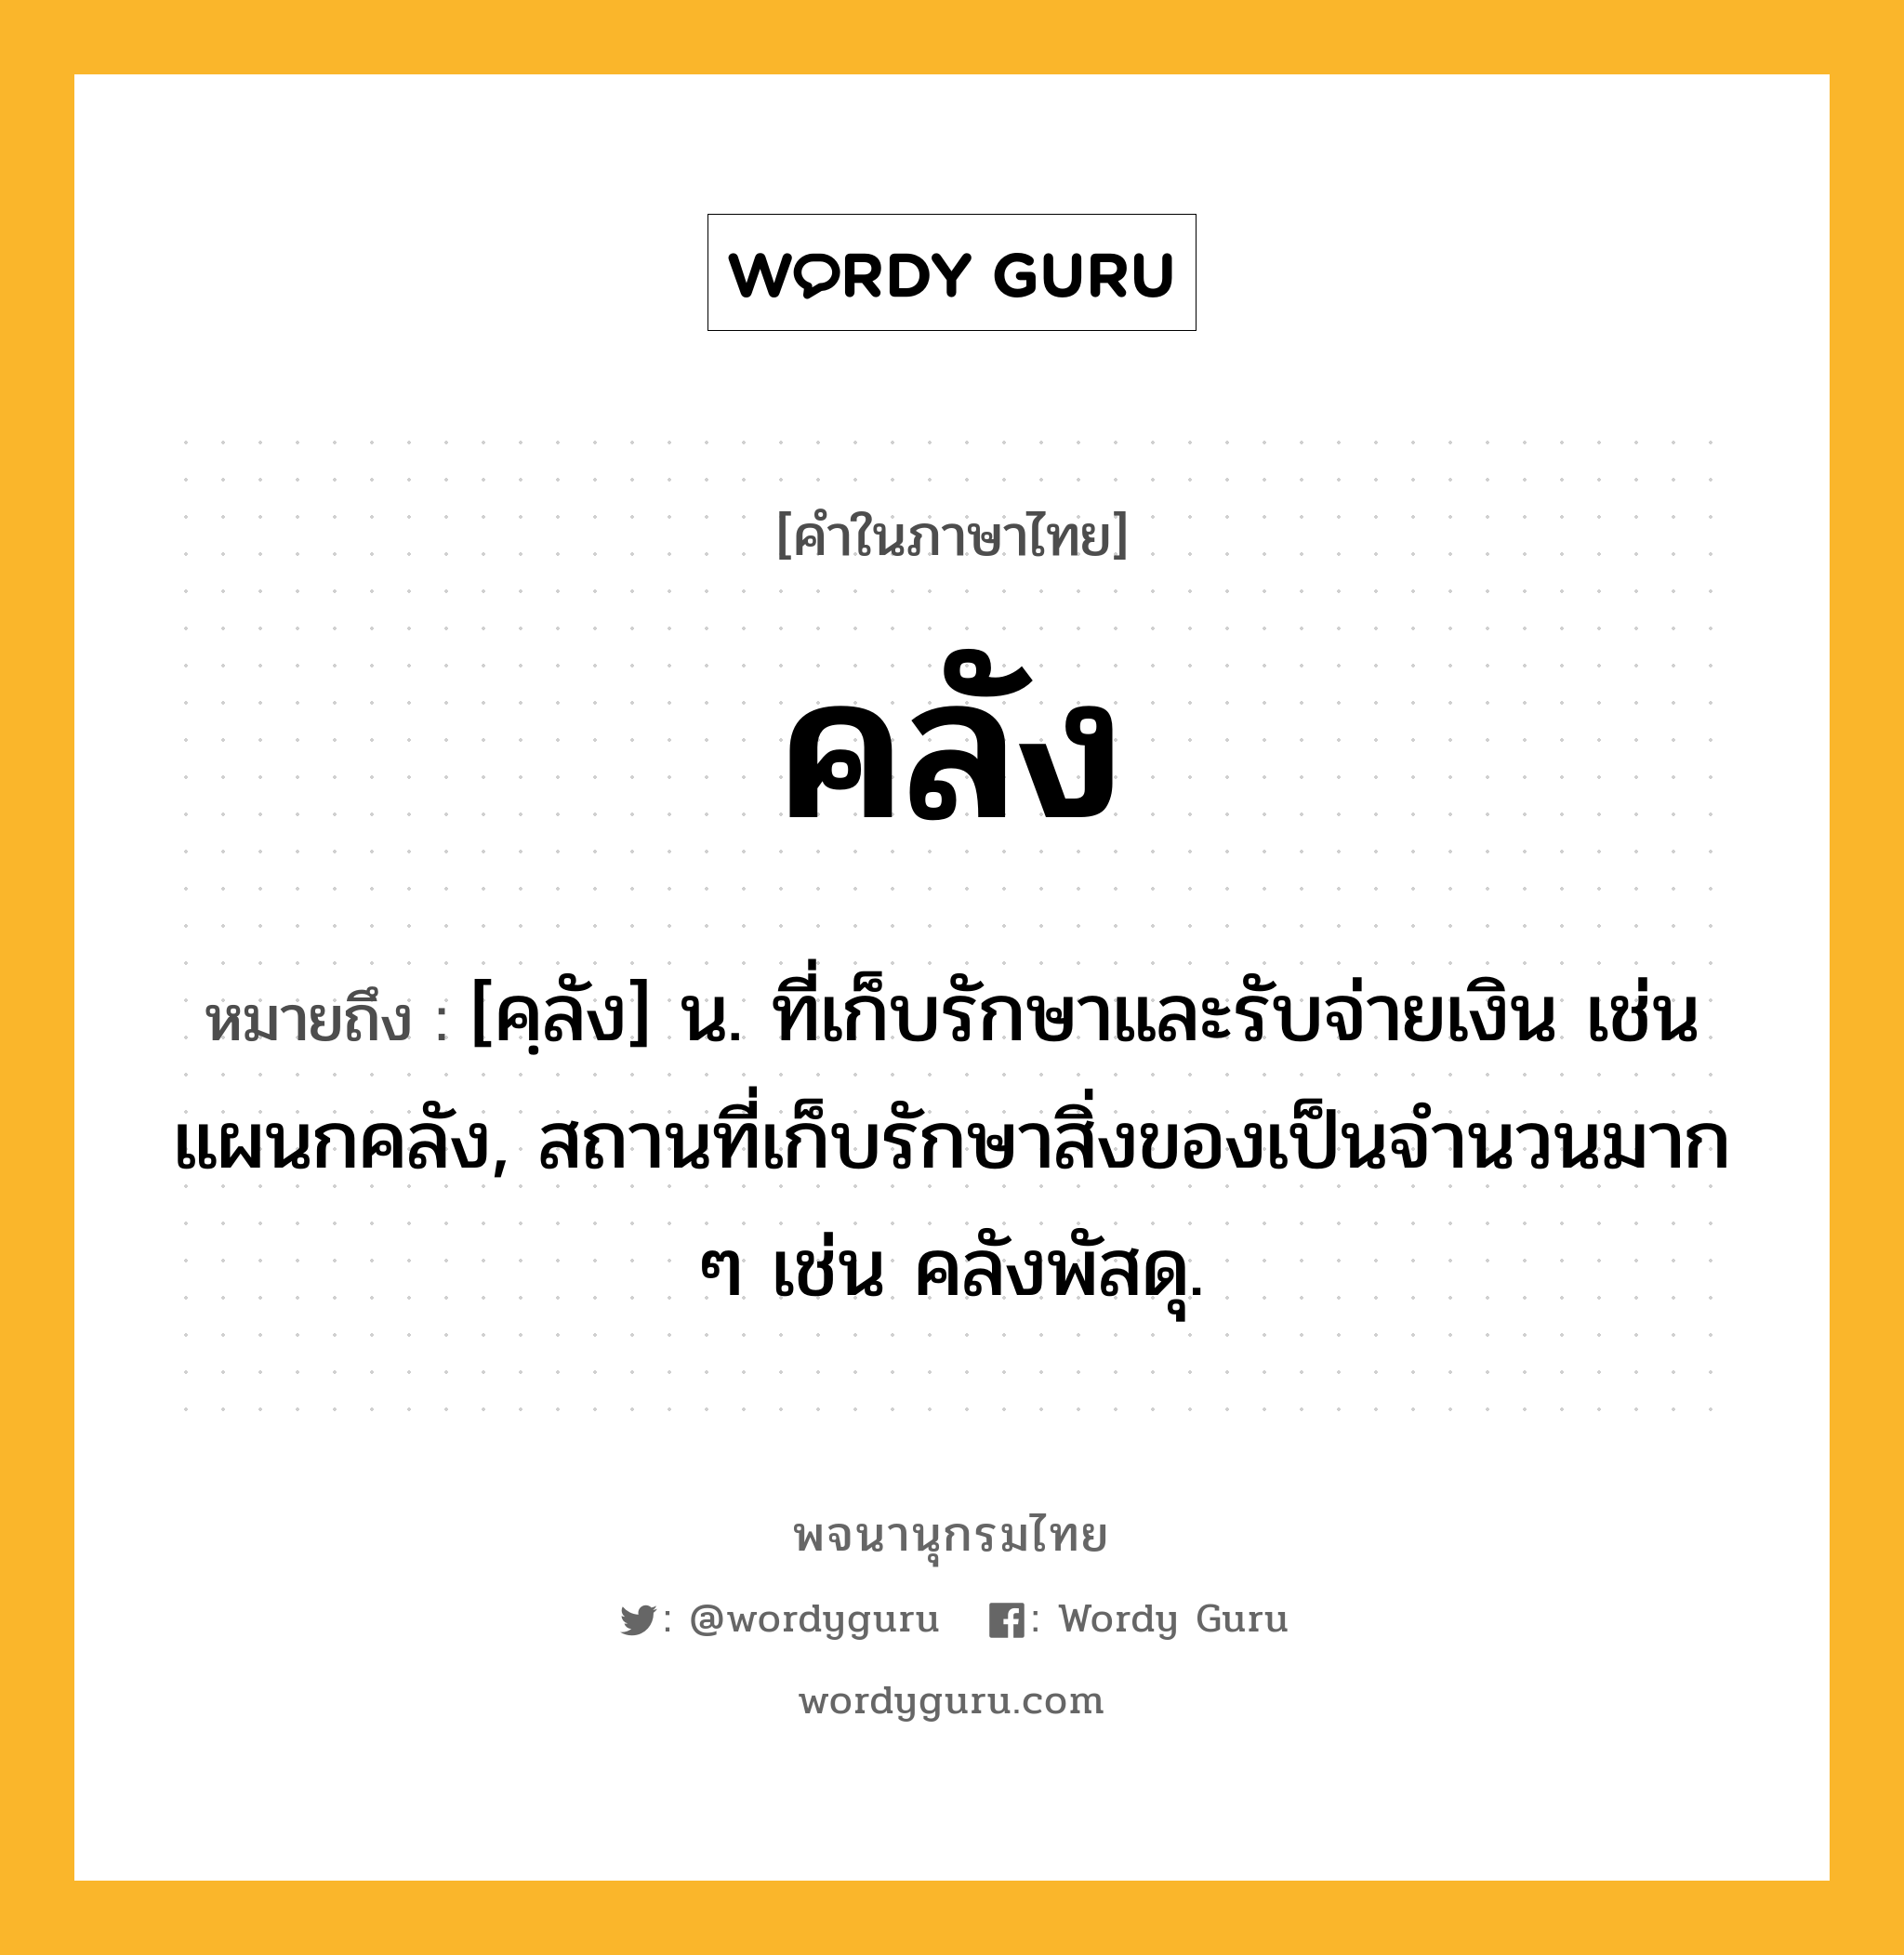 คลัง ความหมาย หมายถึงอะไร?, คำในภาษาไทย คลัง หมายถึง [คฺลัง] น. ที่เก็บรักษาและรับจ่ายเงิน เช่น แผนกคลัง, สถานที่เก็บรักษาสิ่งของเป็นจํานวนมาก ๆ เช่น คลังพัสดุ.